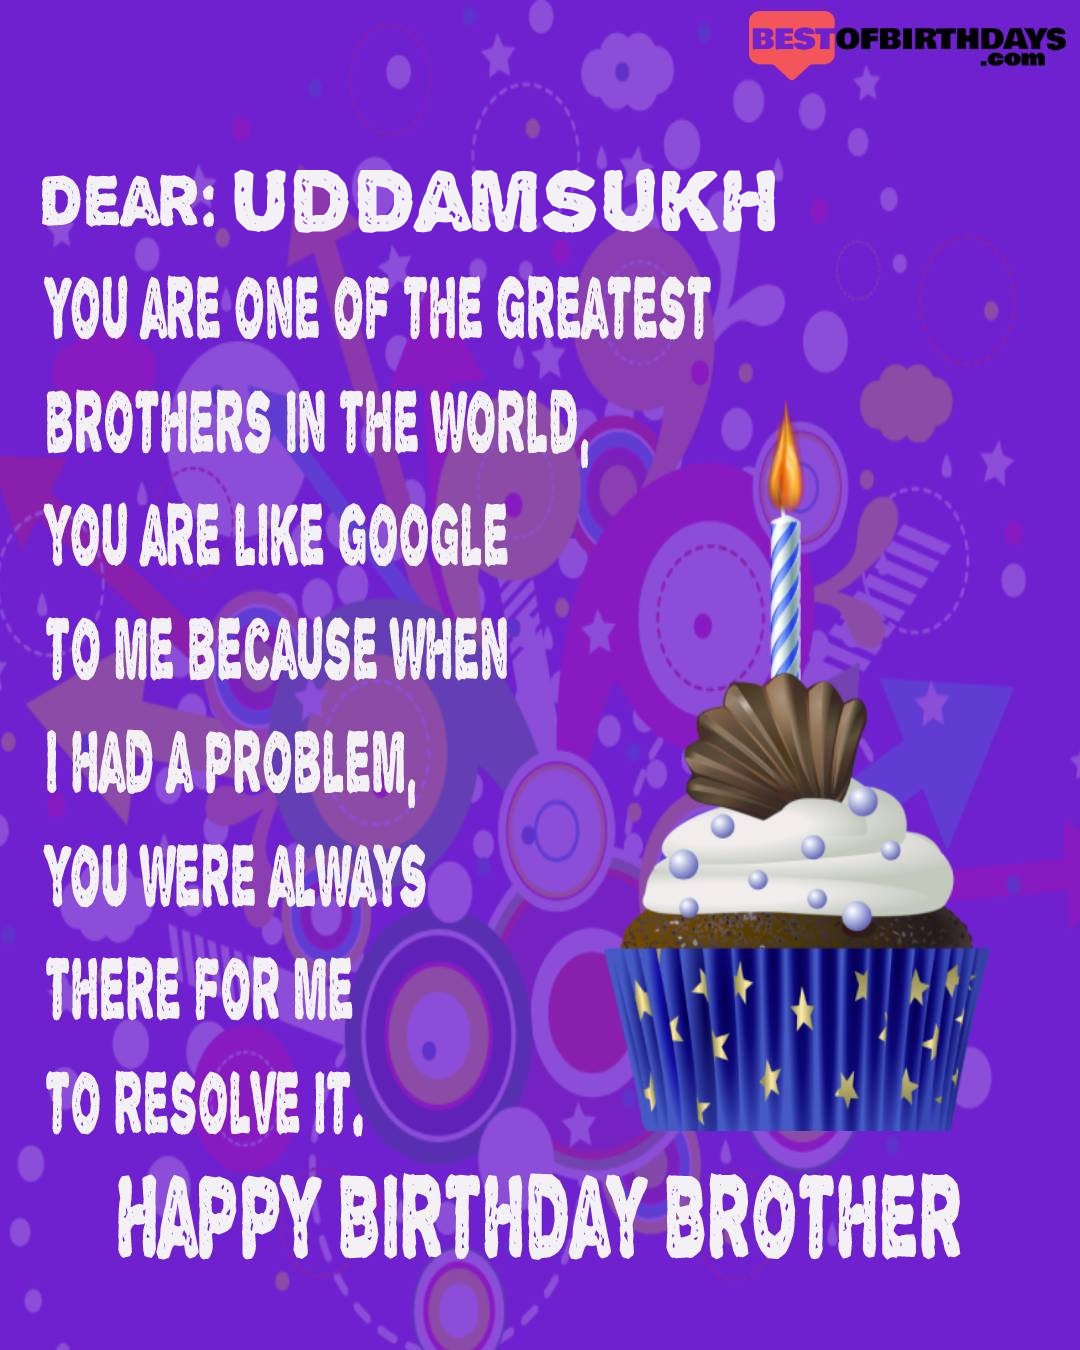 Happy birthday uddamsukh bhai brother bro